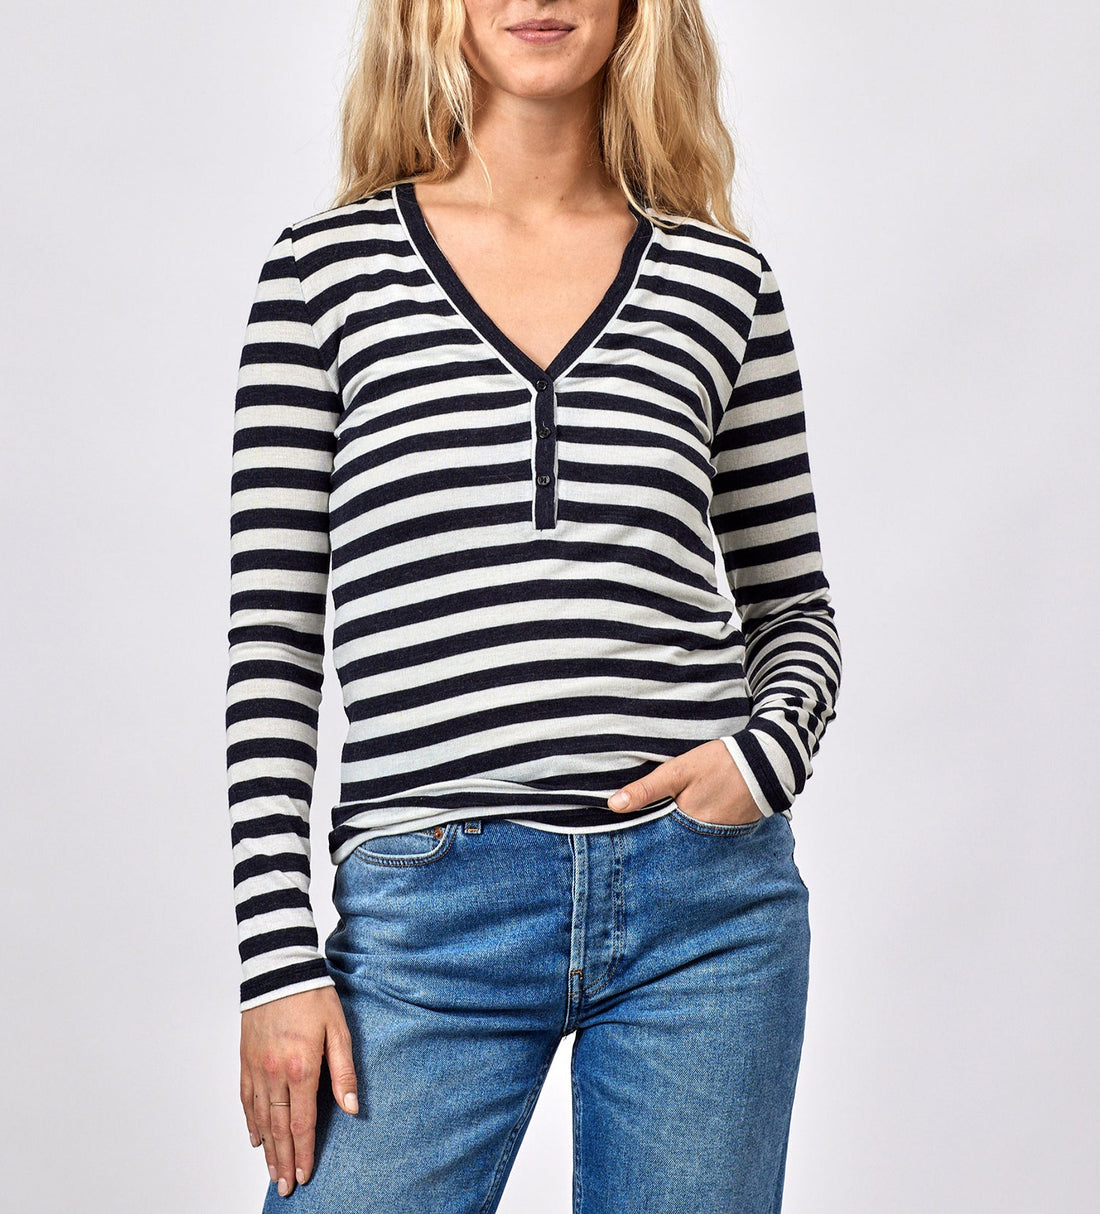 Mai blouse off white/navy stripes